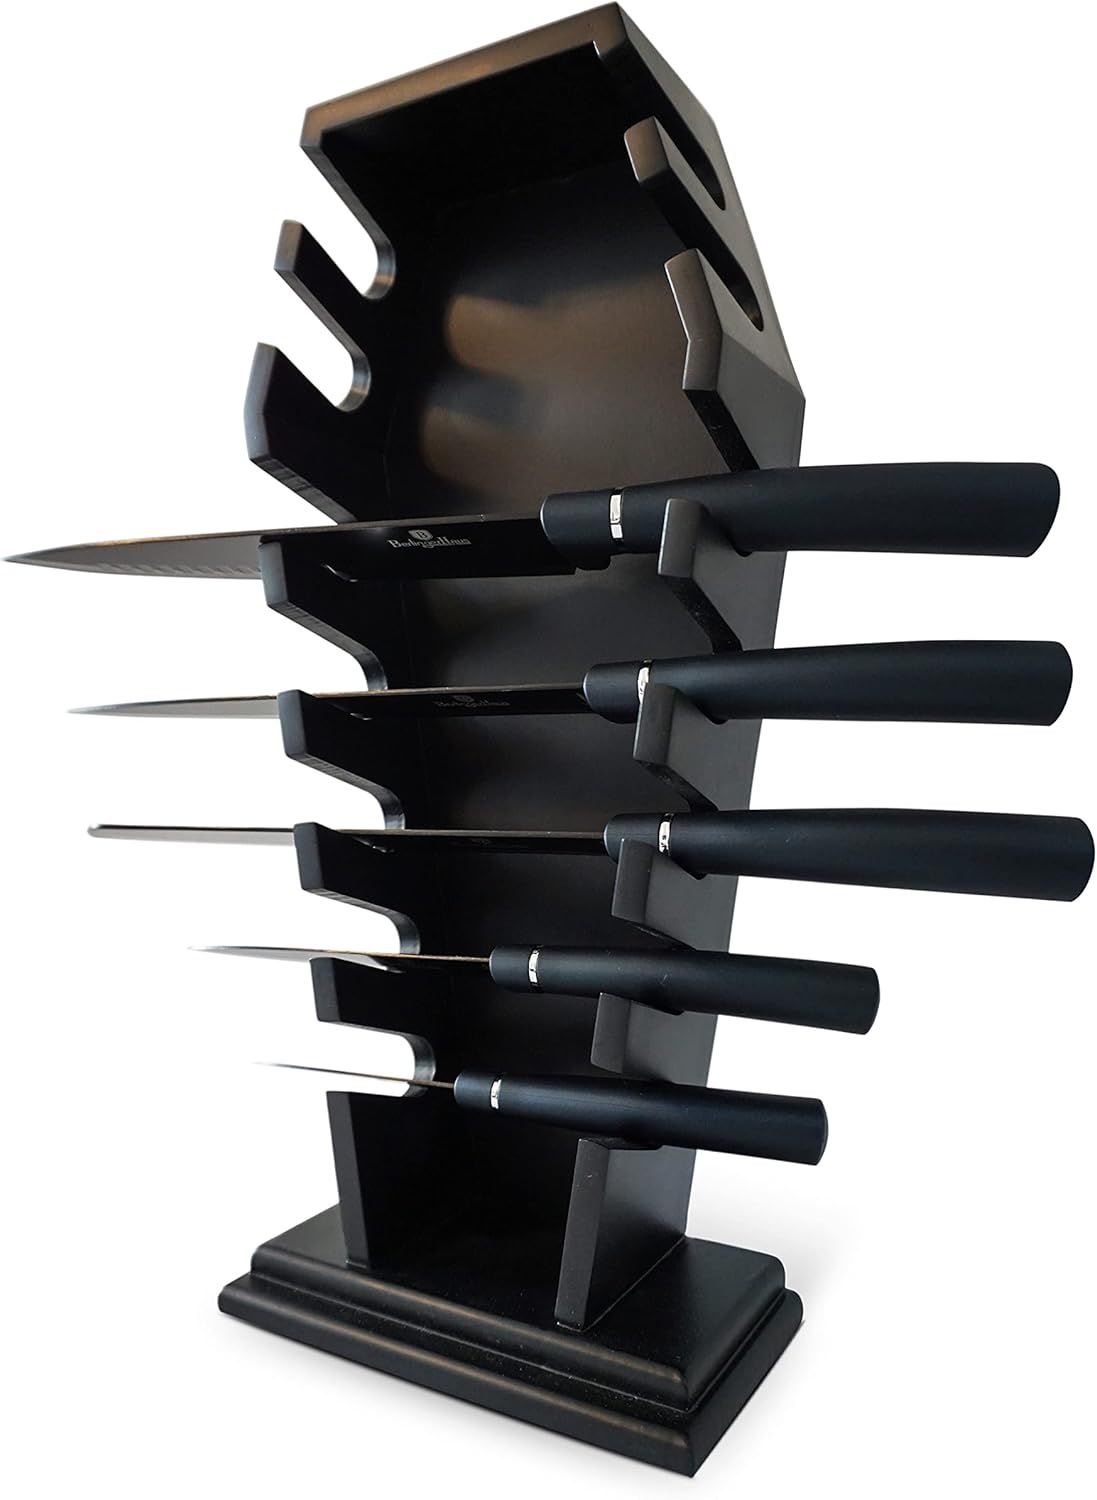 Gothic knife holder - Gothic Kitchen decor Gothic home decor Goth kitchen accessories & coffin kn... | Amazon (US)